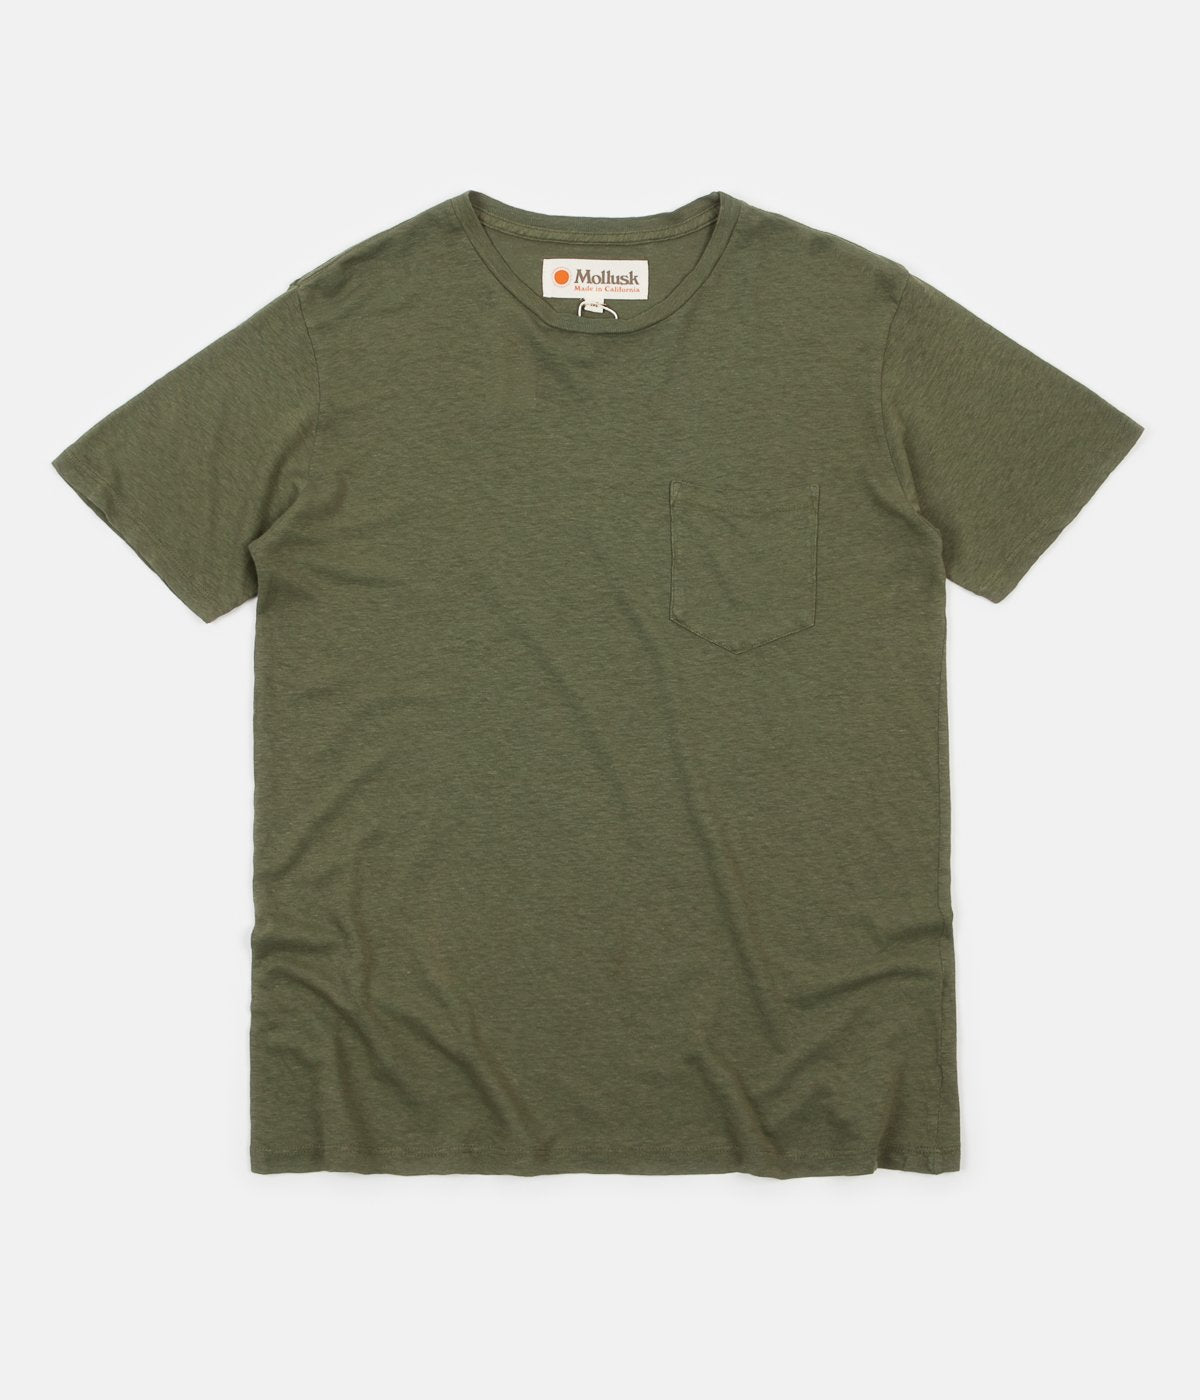 Mollusk Hemp Pocket T-Shirt in Mash Green | Flatspot